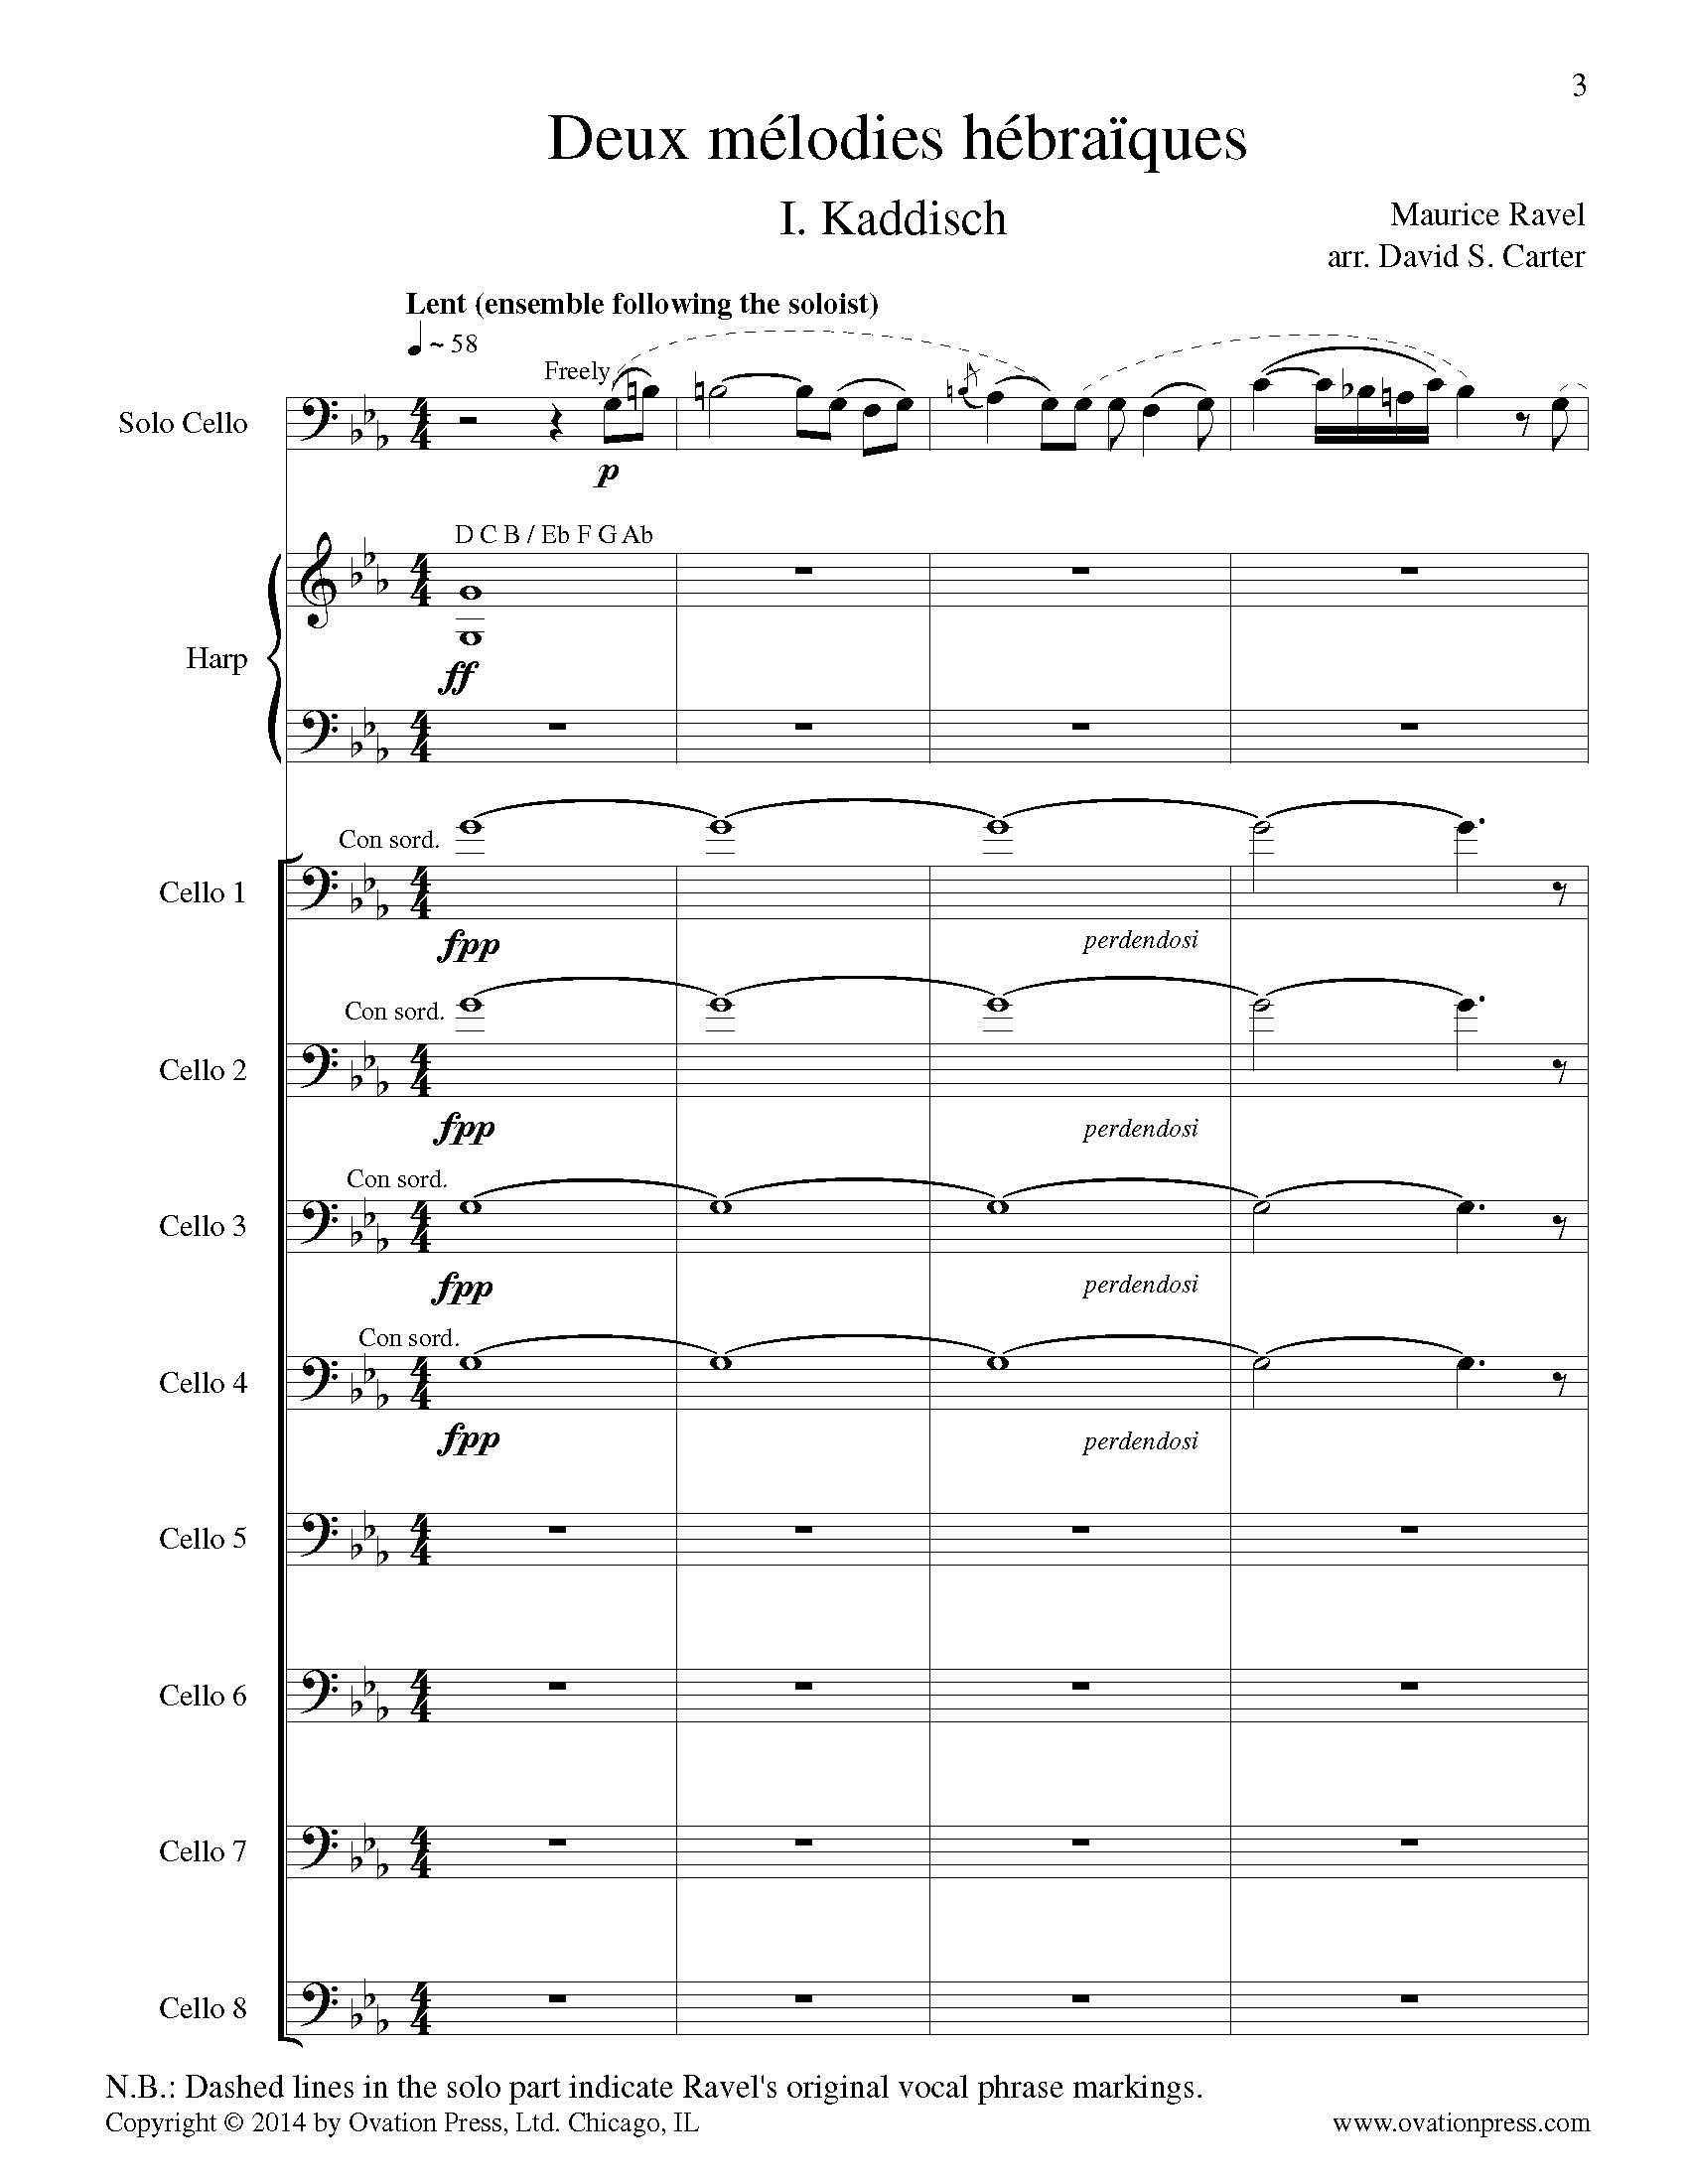 Ravel Kaddisch Arranged for 9 Celli and Harp